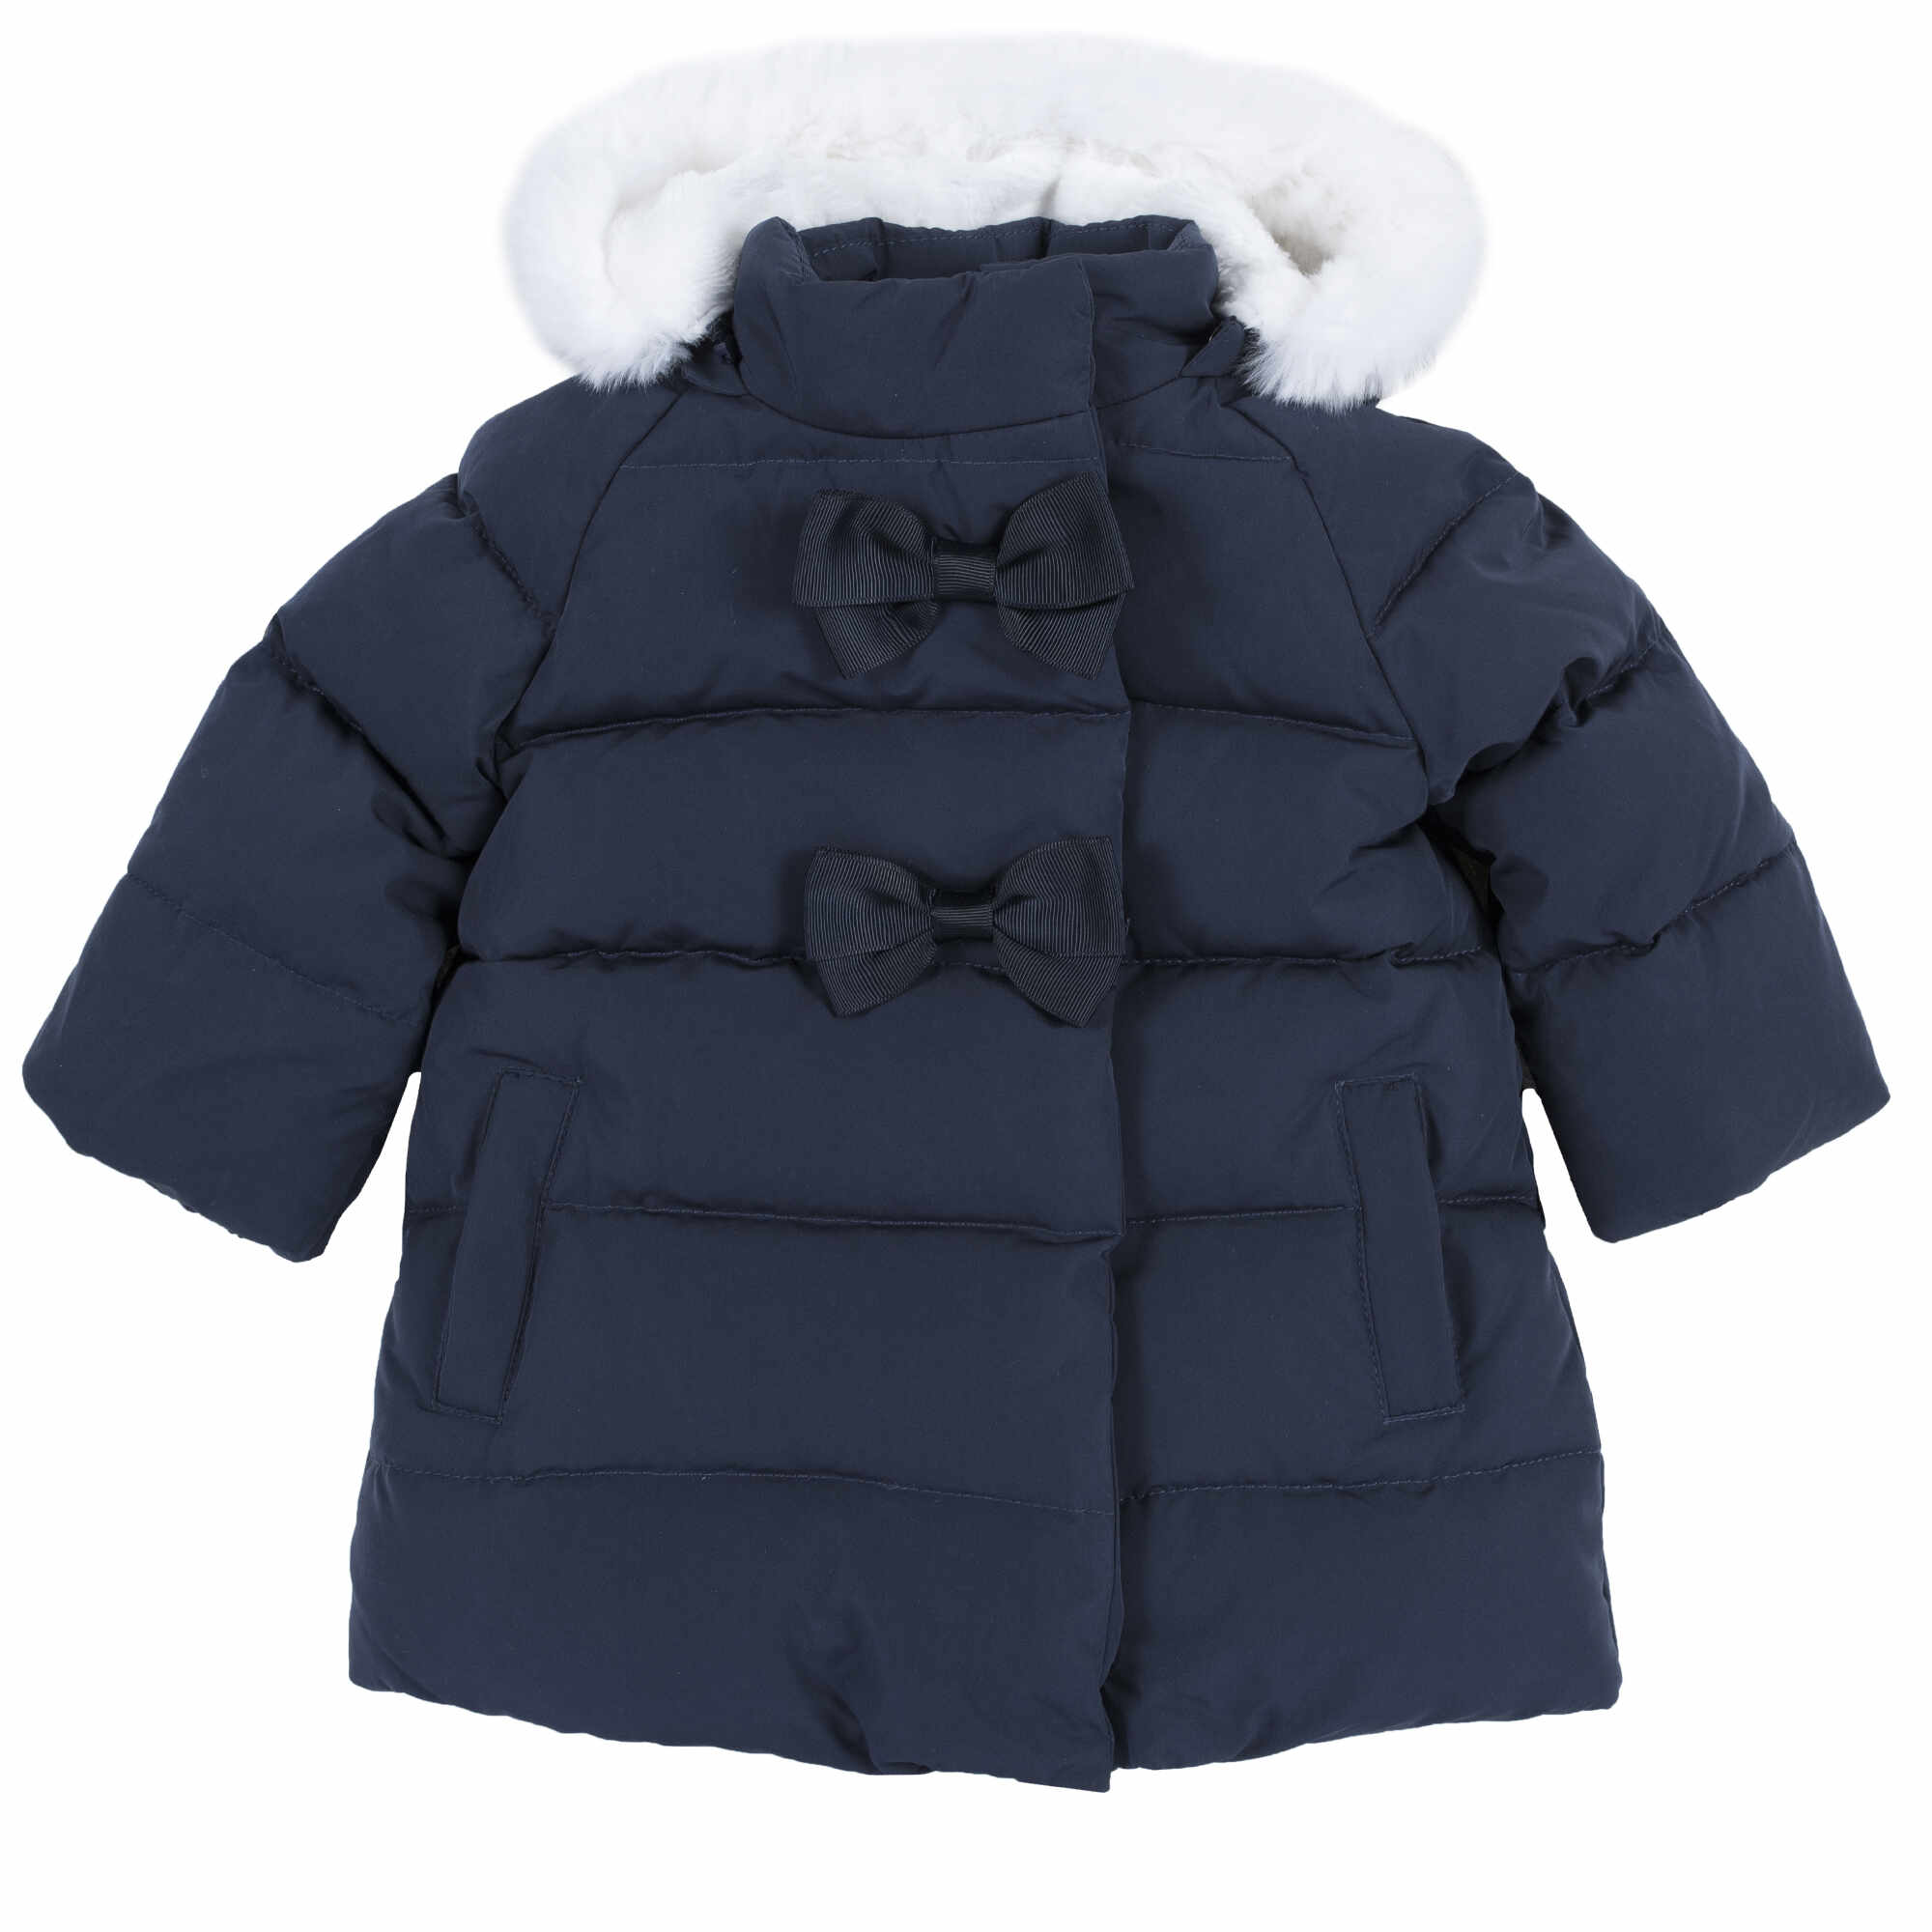 Jacheta copii Chicco, cu puf si pene de rata, bleumarin, 87428